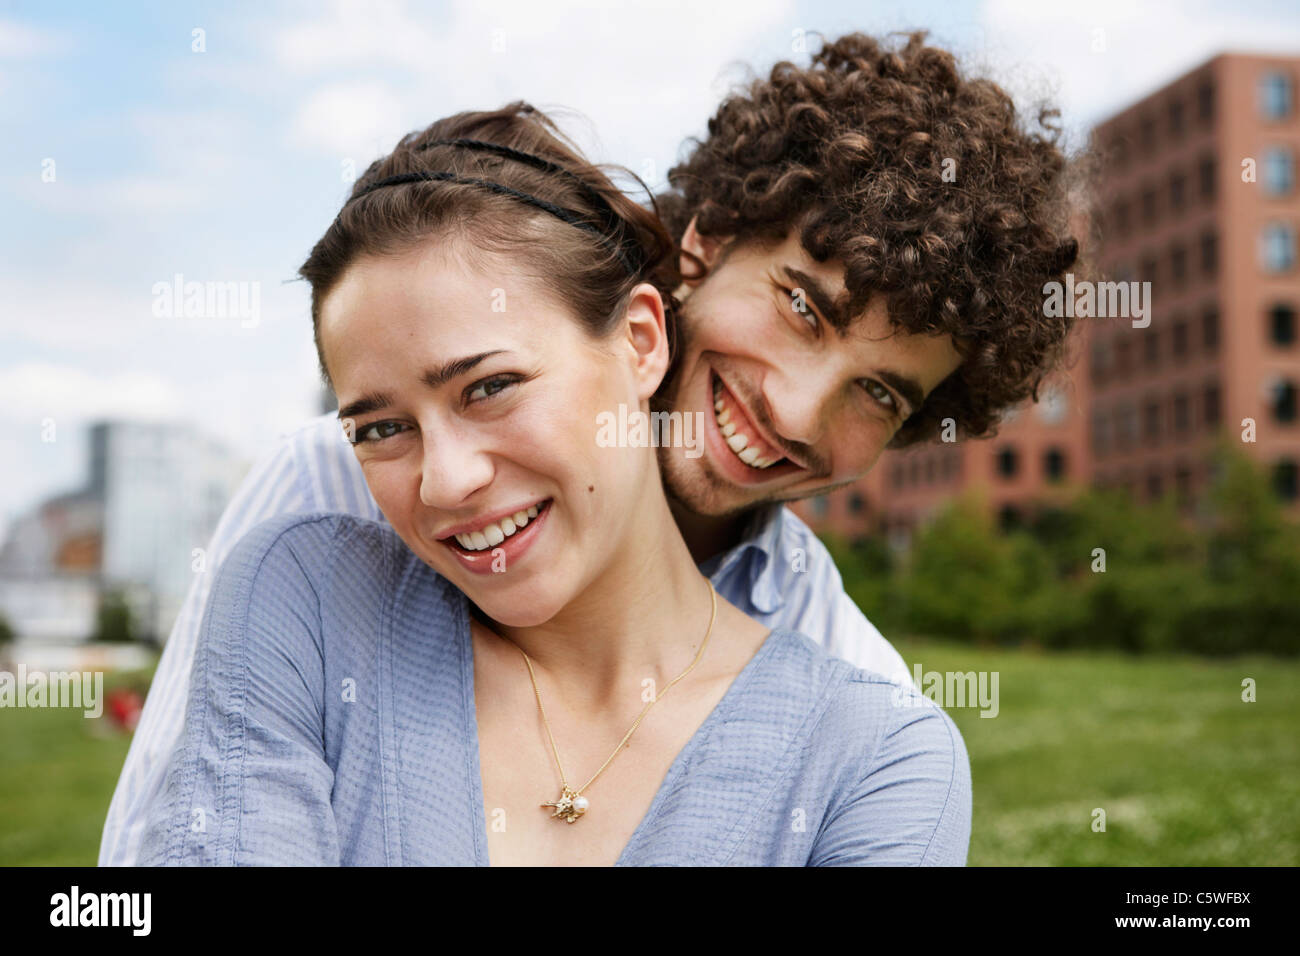 Germania, Berlino, coppia giovane e sorridente, ritratto Foto Stock